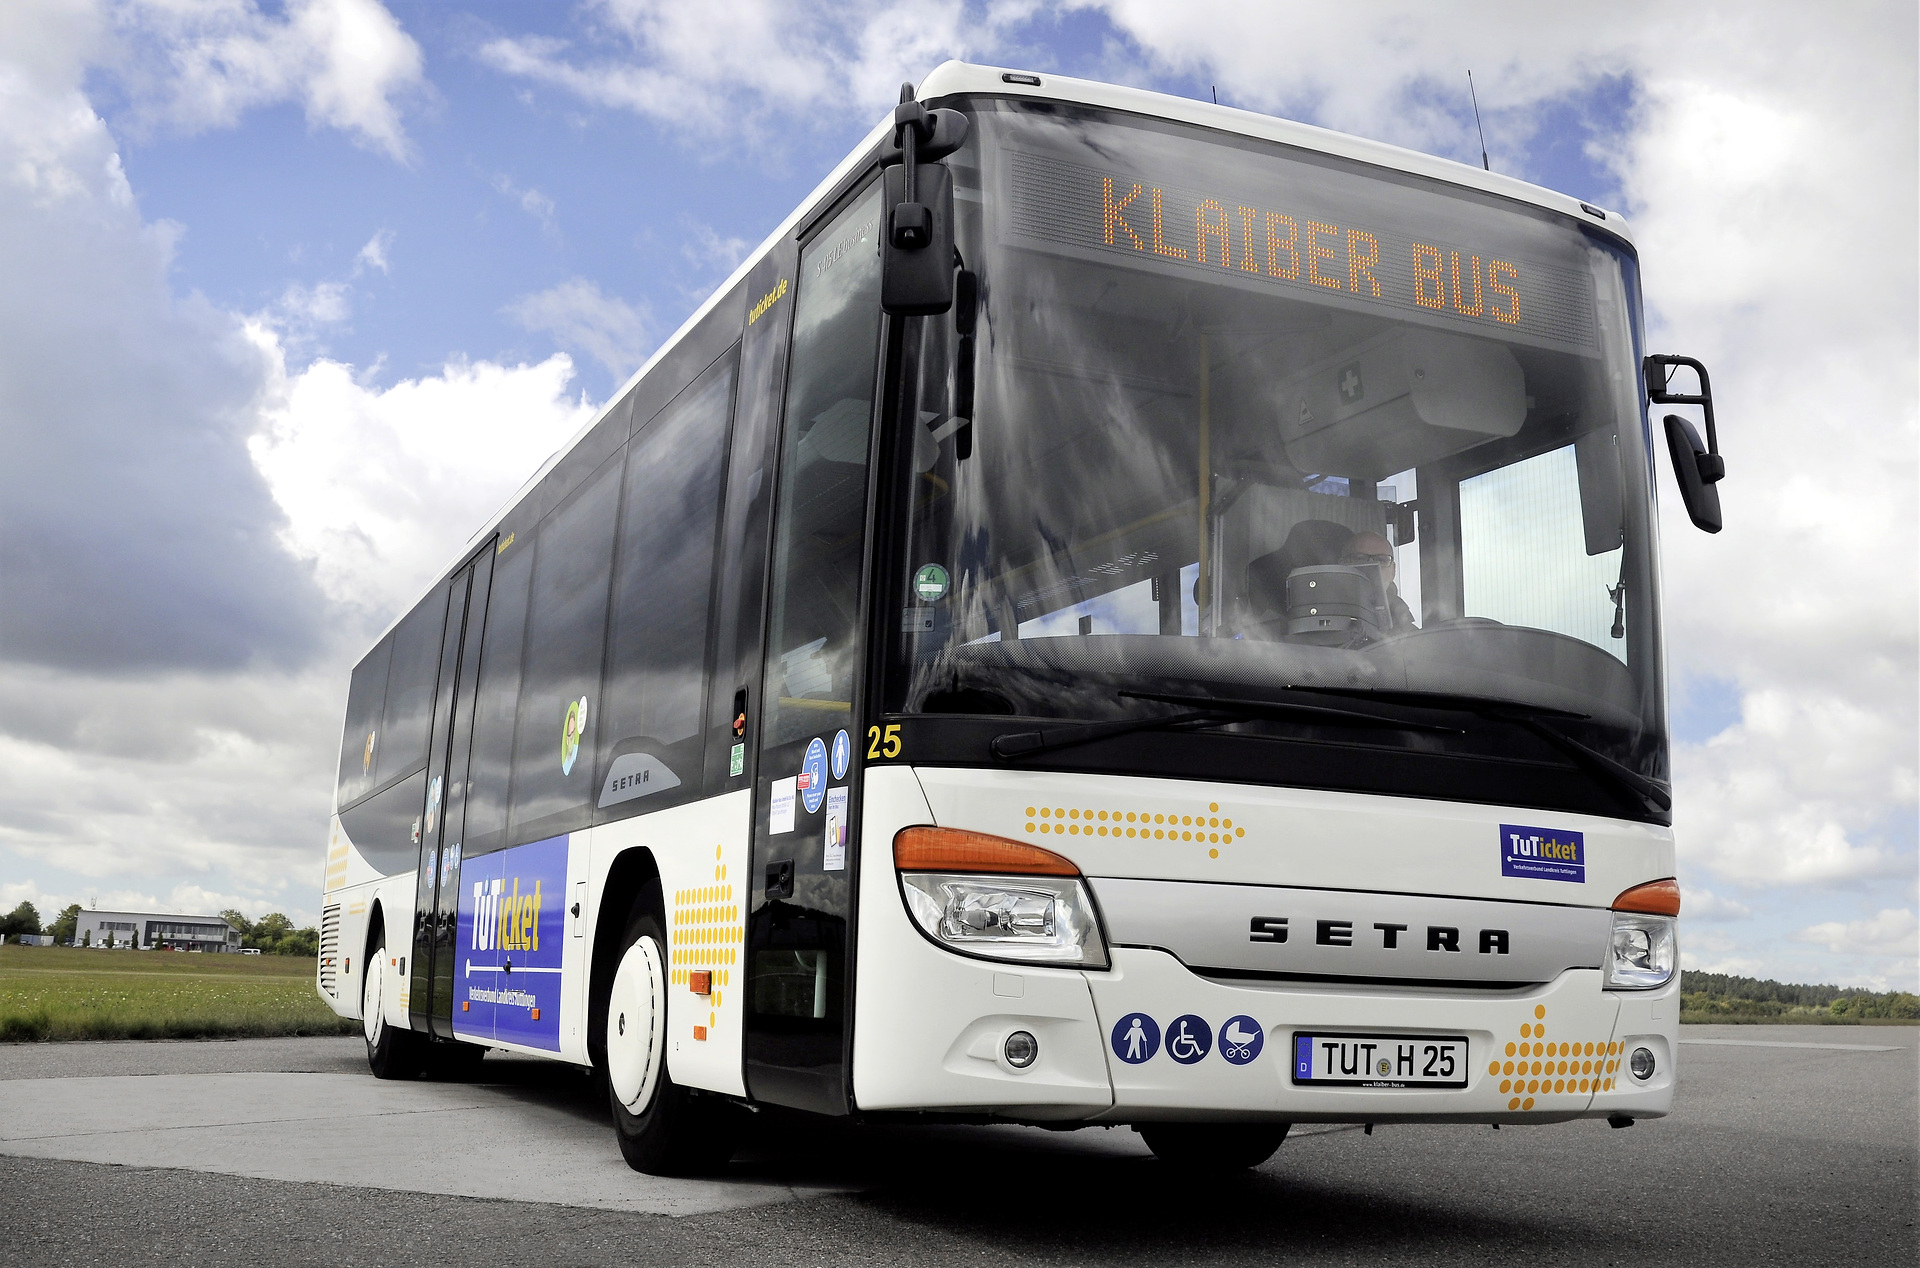 Klaiber Bus completes Setra fleet